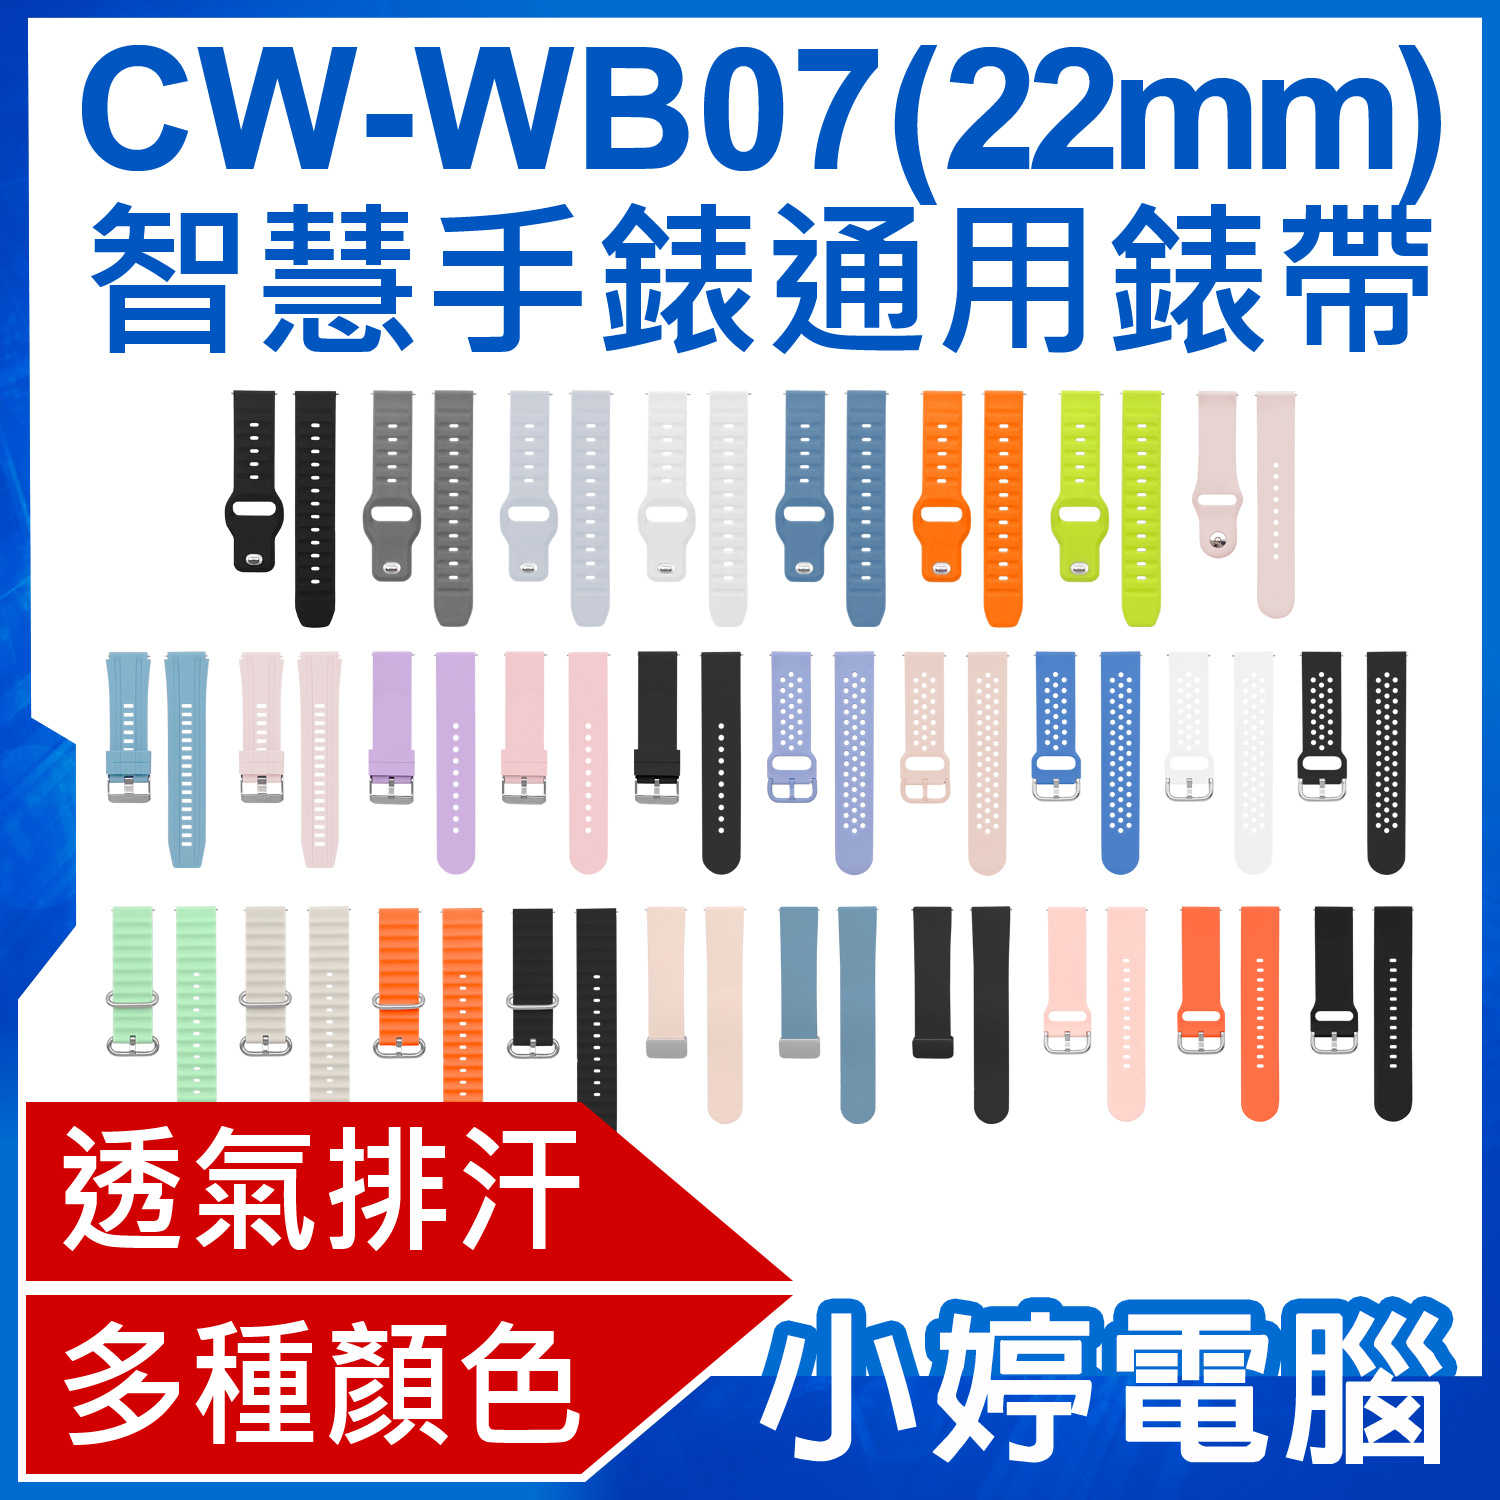 【小婷電腦】CW-WB07 智慧手錶通用錶帶 22mm 柔軟材質 多種顏色 方便安裝 防水透氣 AW-S9適用